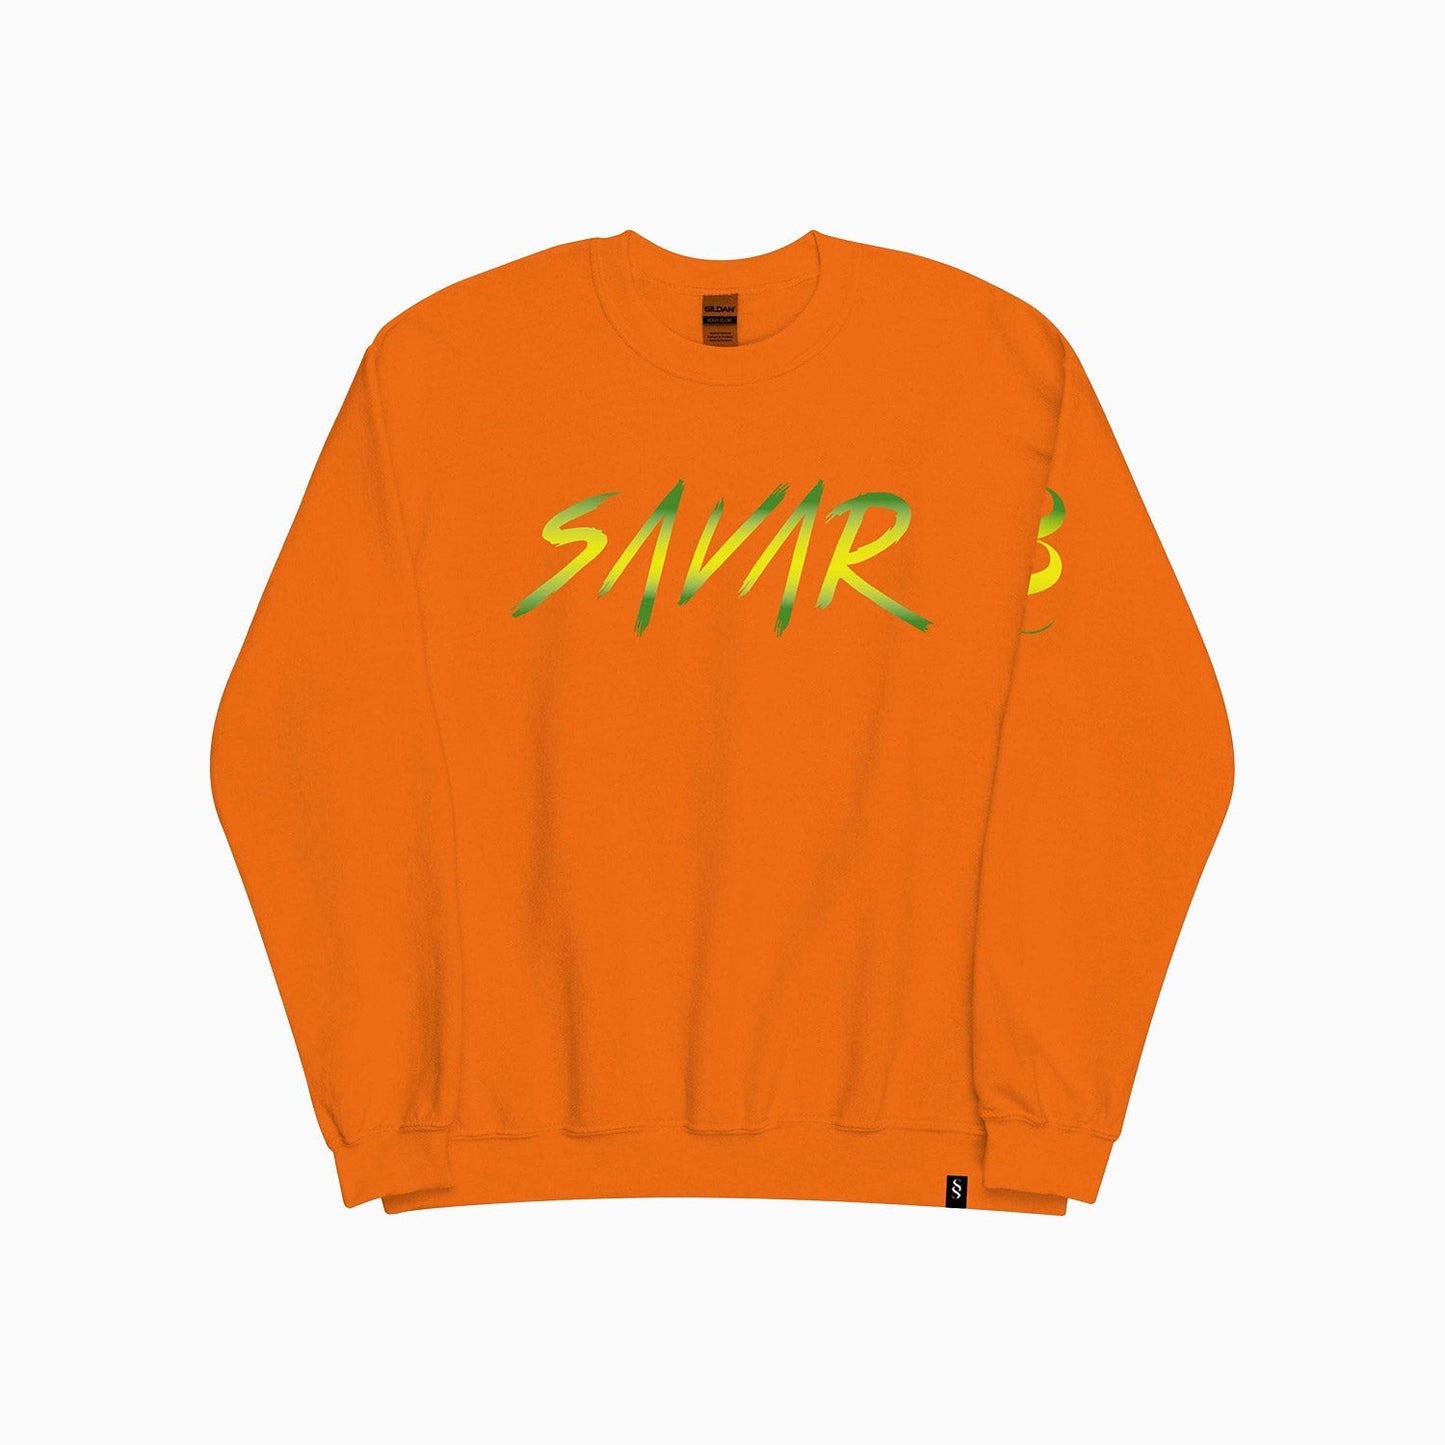 Men's Savar Signature Crew Neck Sweatshirt